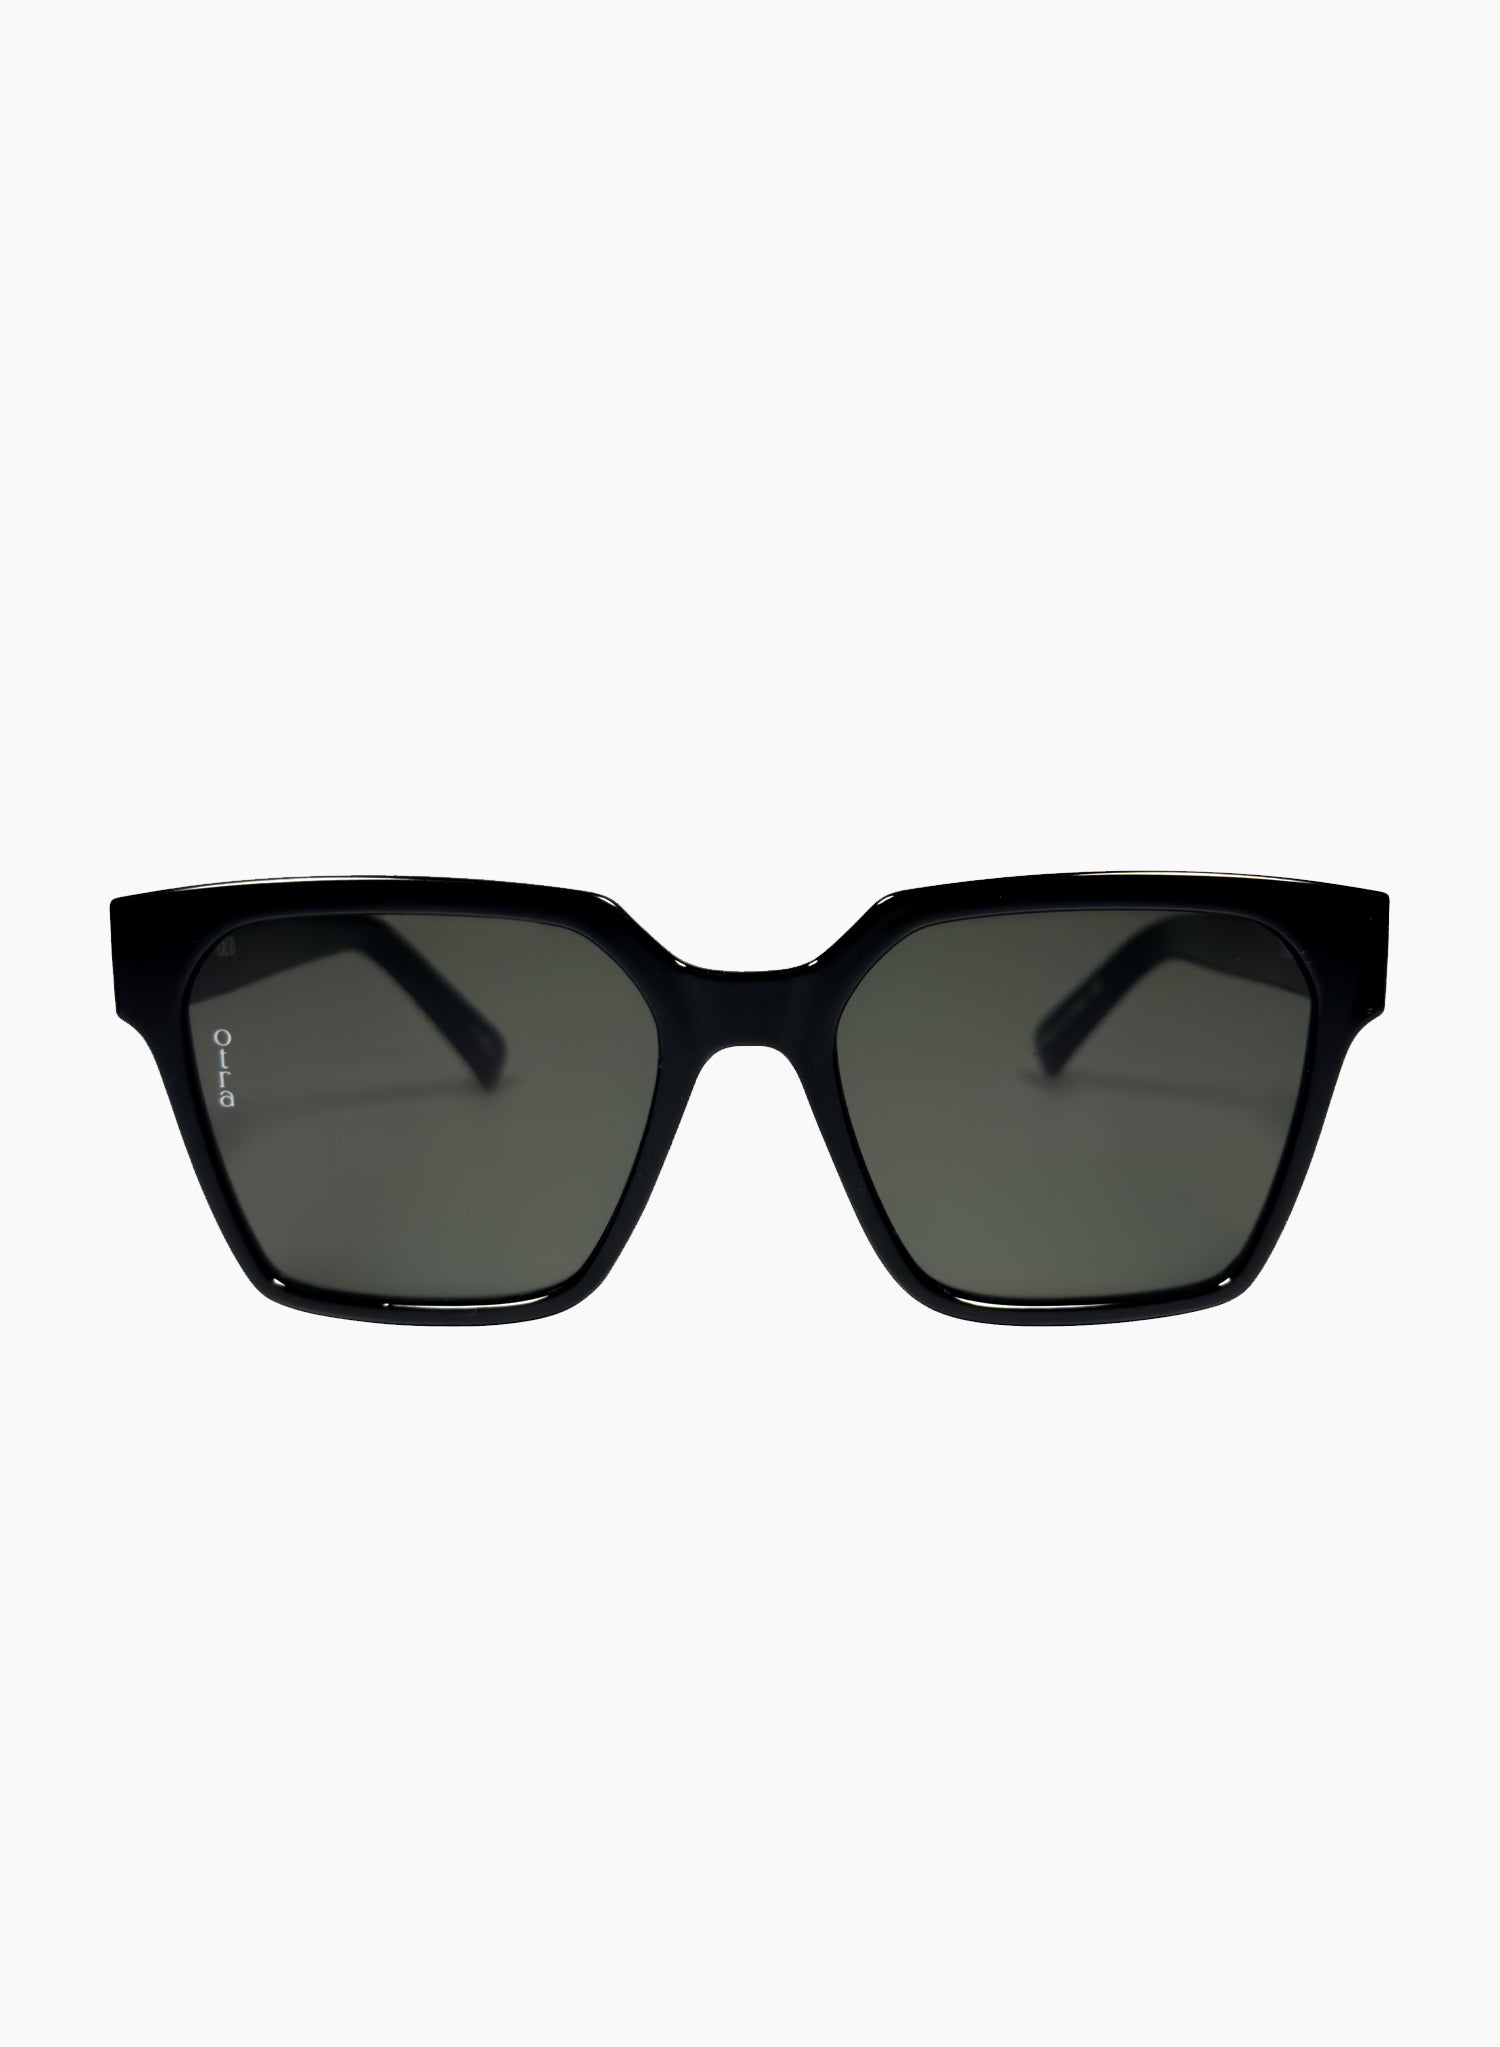 Zamora angled square sunglasses in black